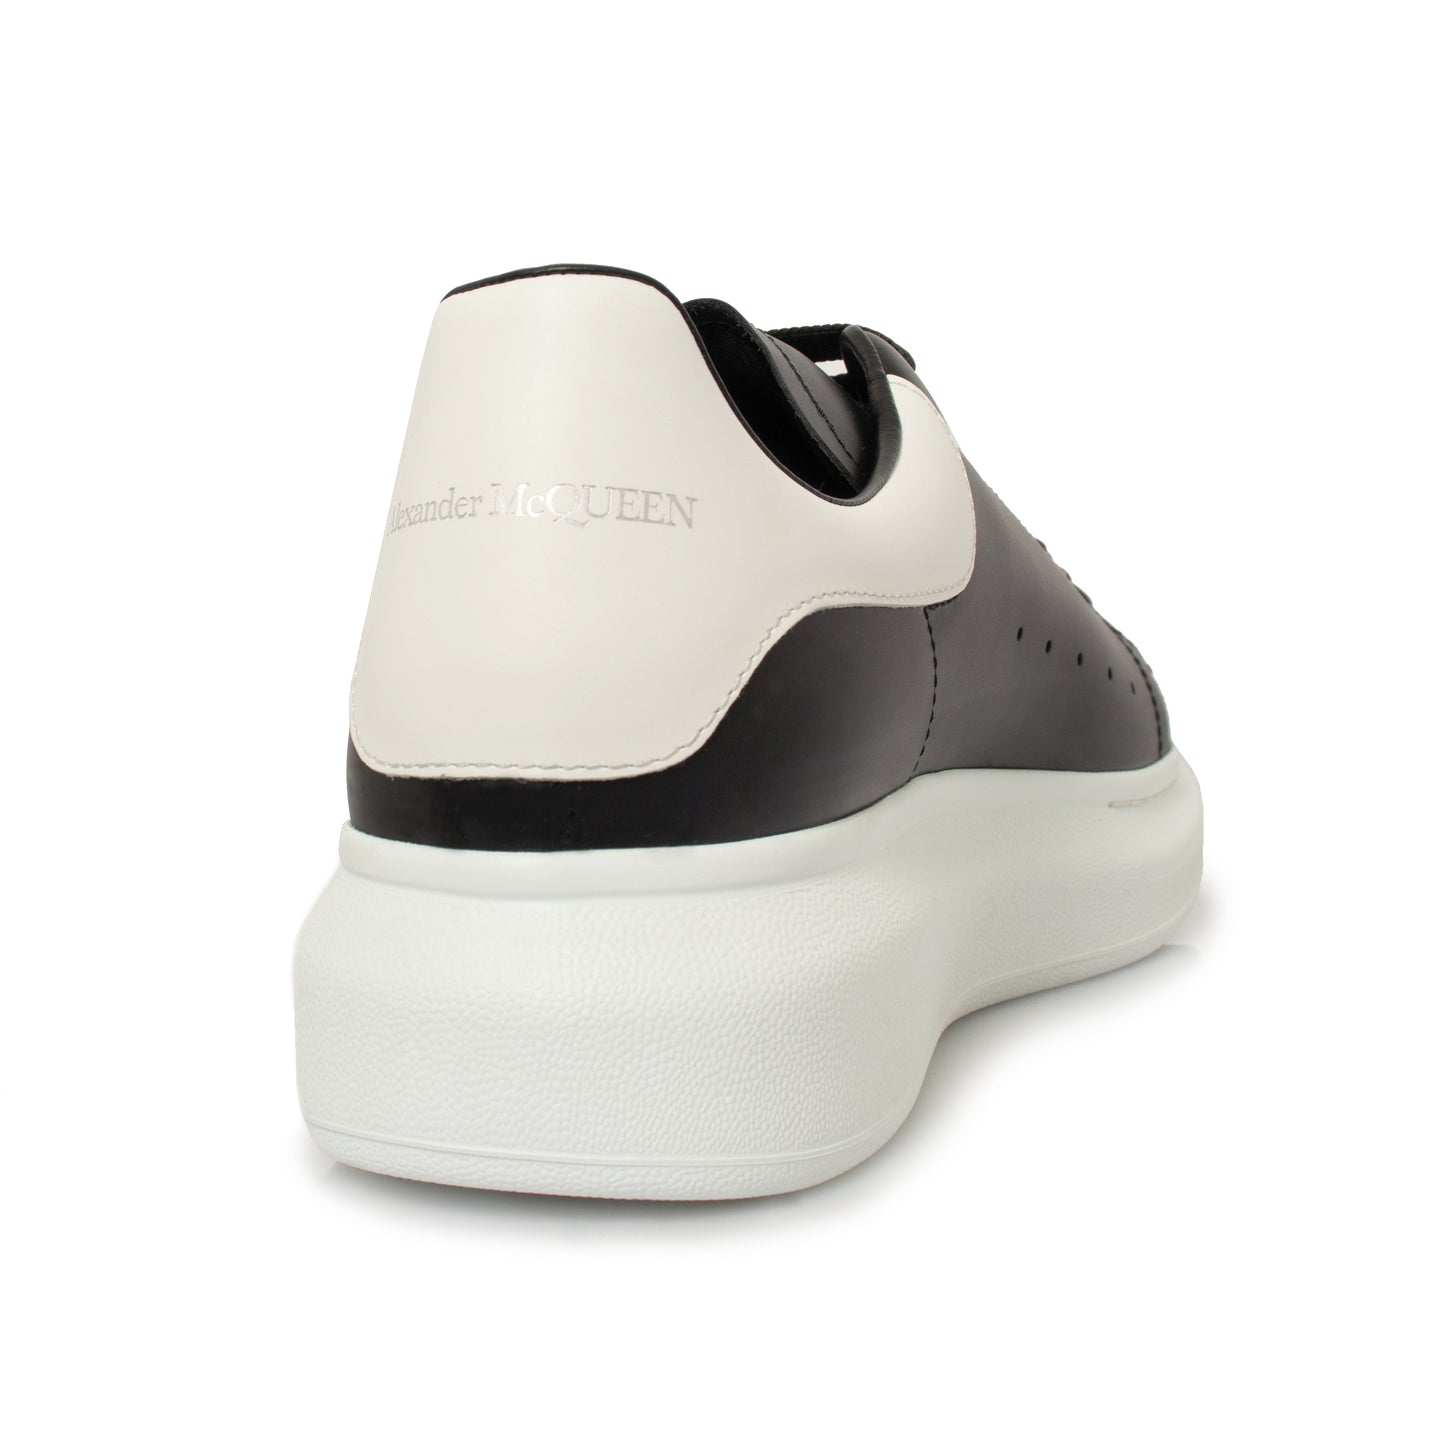 Larry Oversized Sneaker in Black/White